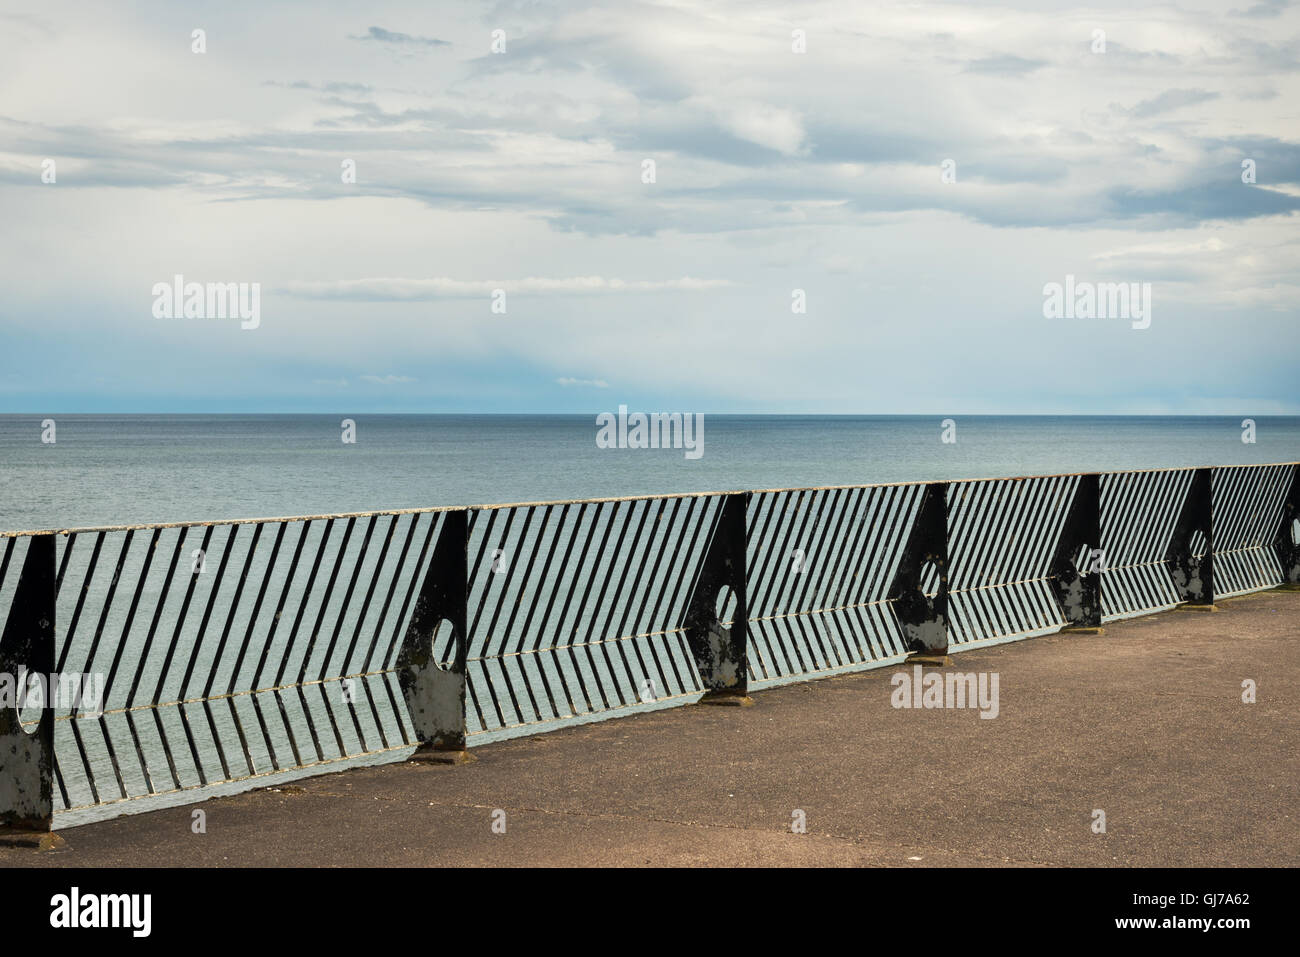 Youghal lungomare piattaforma vuota in cemento con ringhiere in metallo di fronte al mare aperto Foto Stock